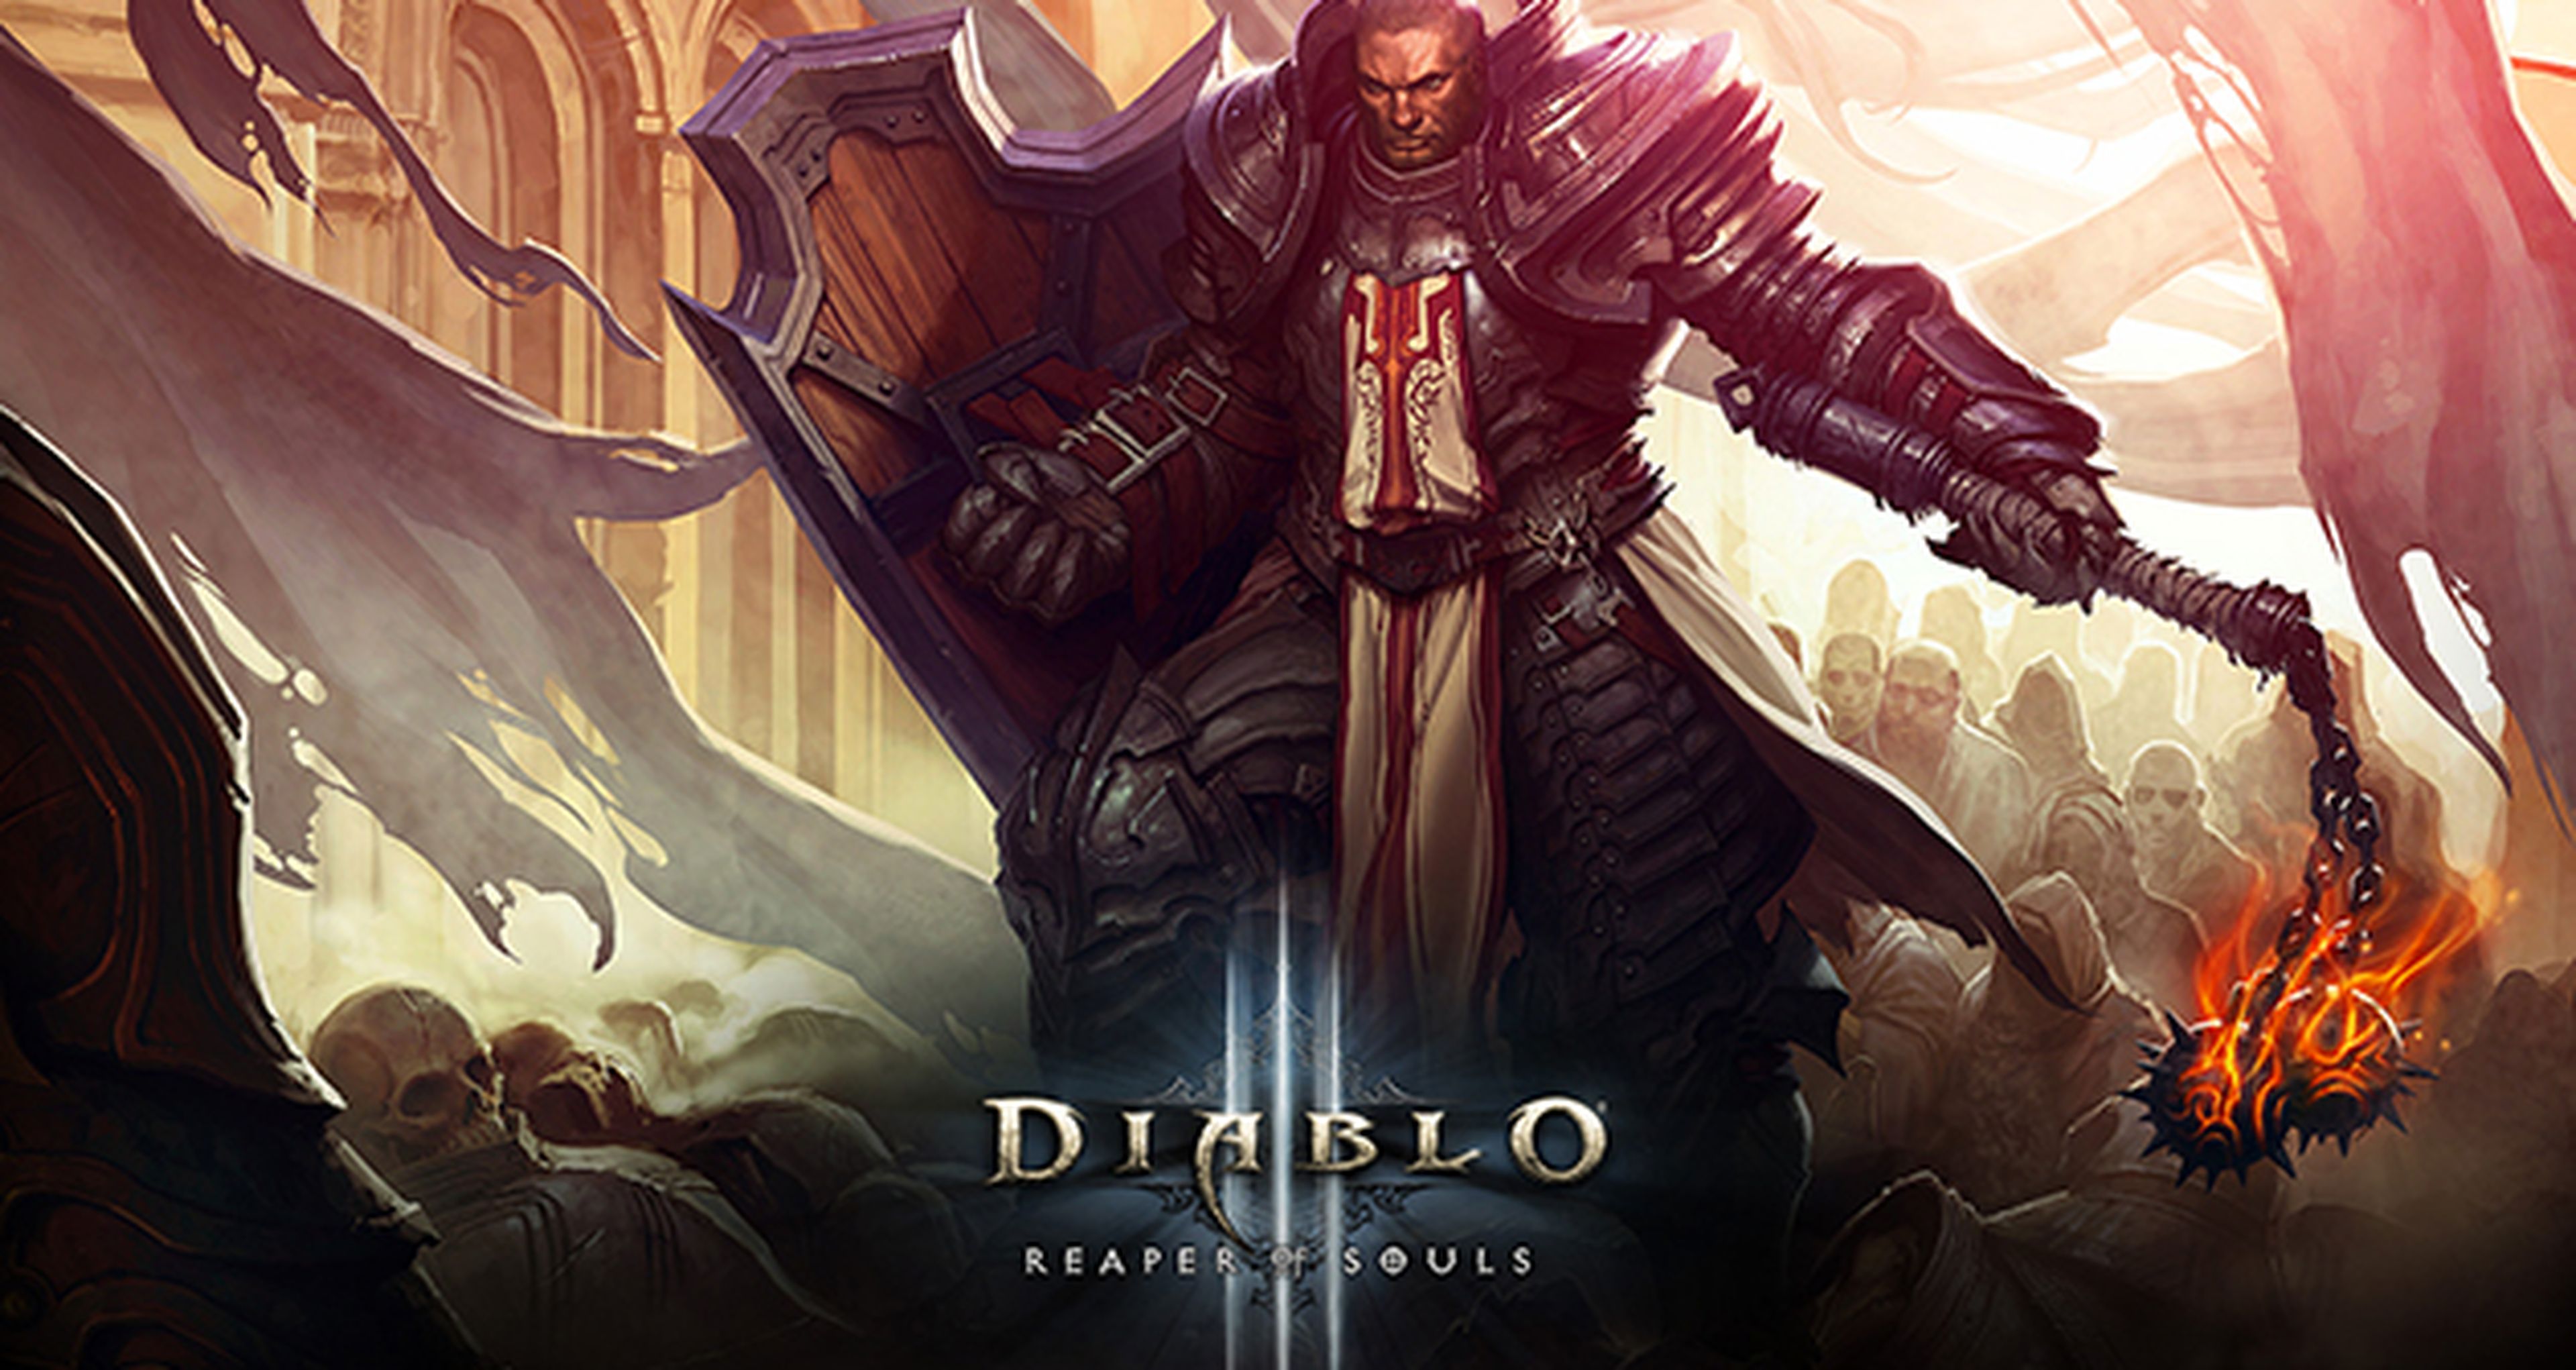 Análisis de Diablo III Reaper of Souls para PC